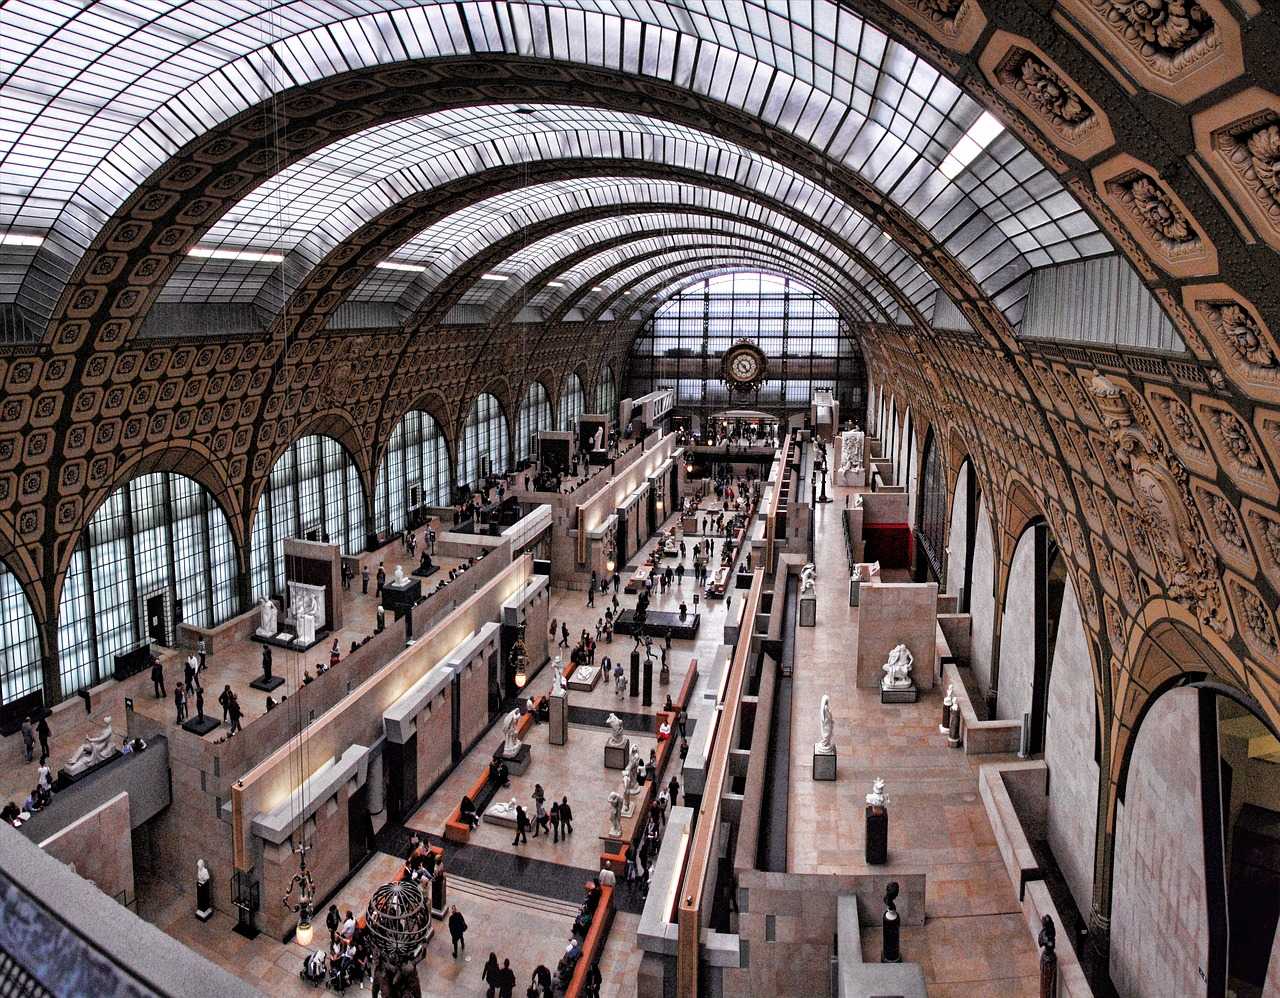 James Tissot (1836-1902), Exhibition, Musée d'Orsay, Paris: 24 March - 19 July 2020